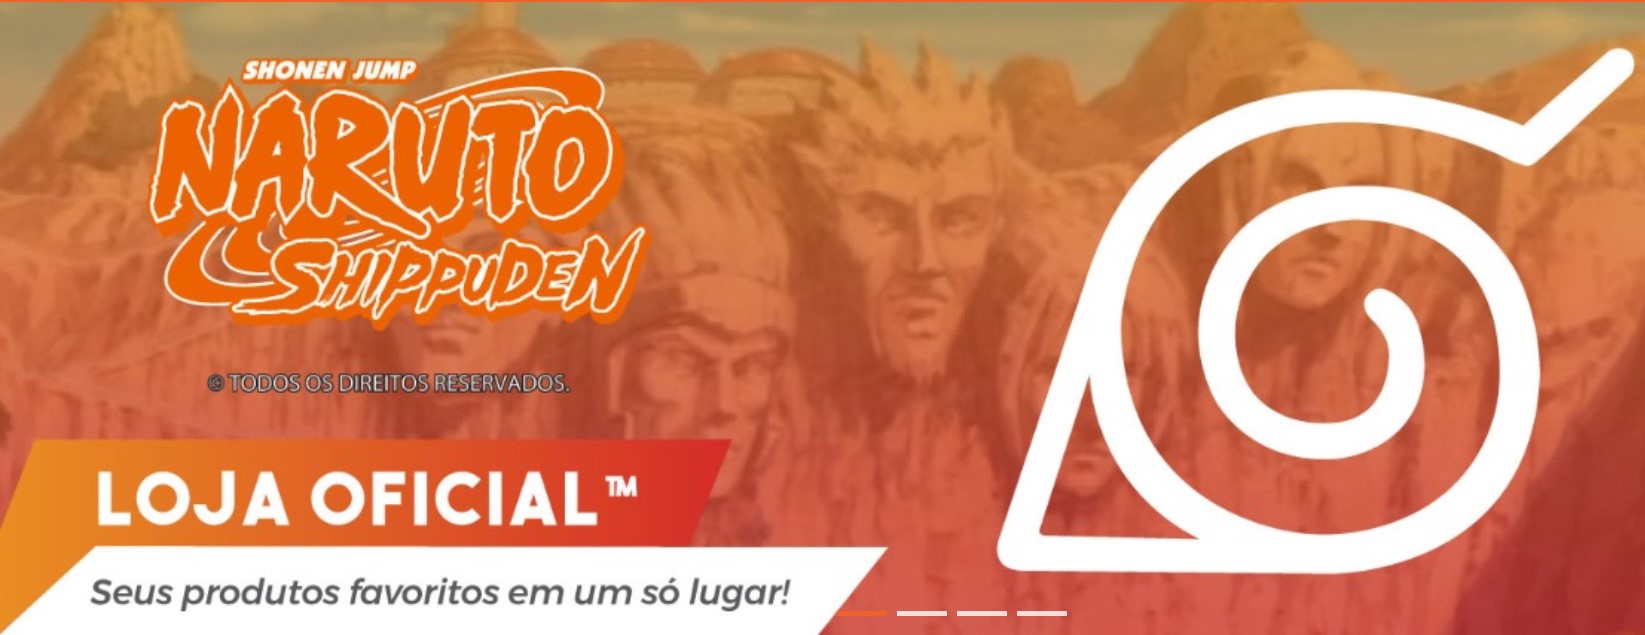 Loja online oficial de Dragon Ball é inaugurada no Brasil